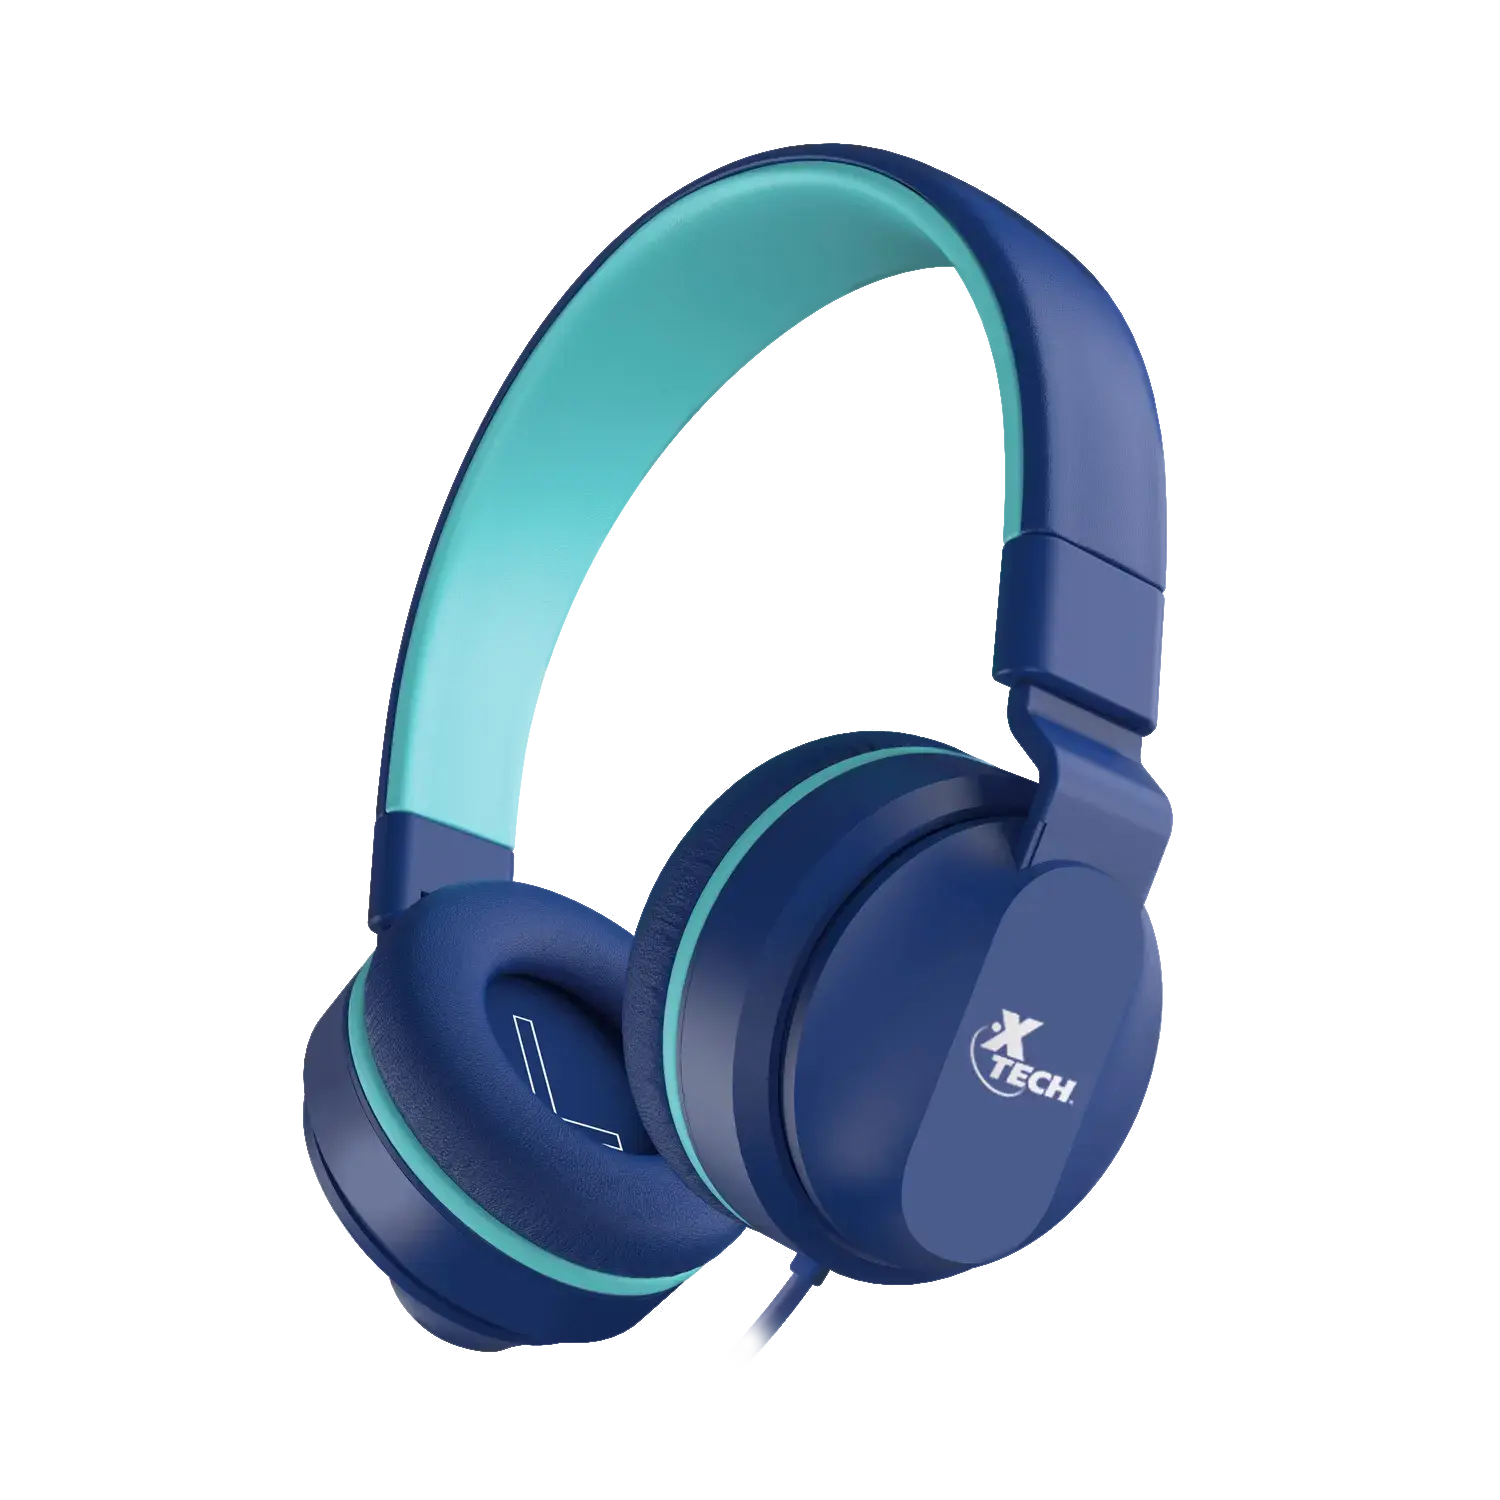 Audífonos Alámbricos de Diadema para Niños Xtech Avid Azul (XTH-356)